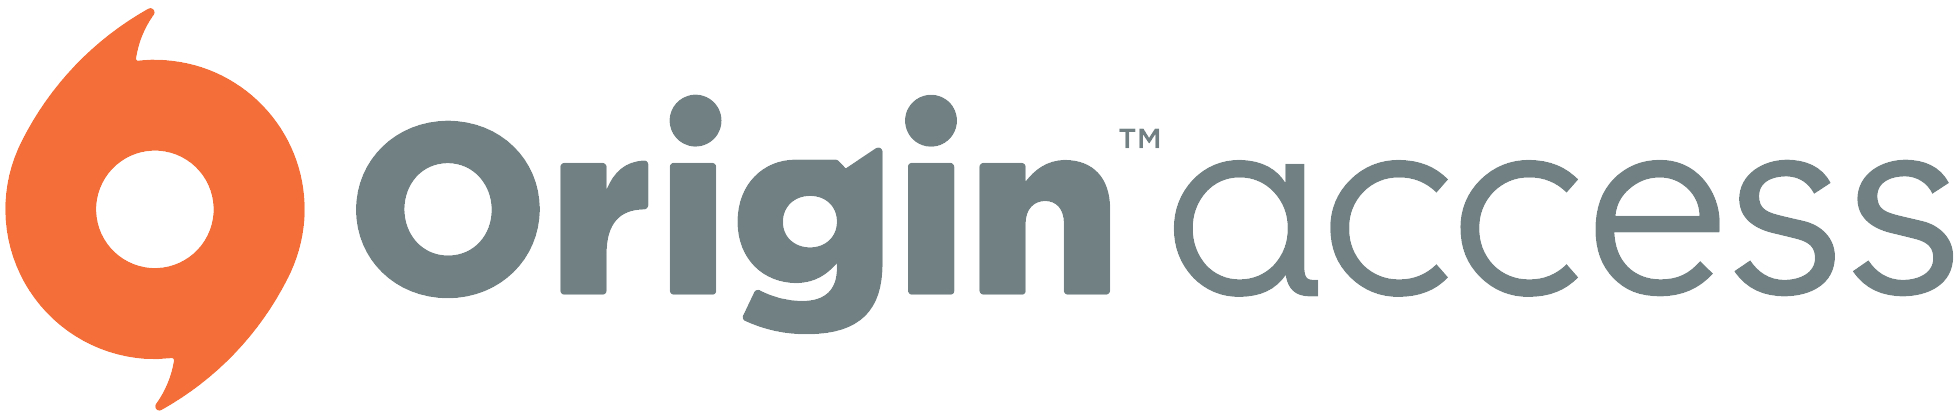 [PC/Origin] Origin Access Basic kostenlos für einen Monat nach Aktivierung von 2-Faktor-Authentifizierung